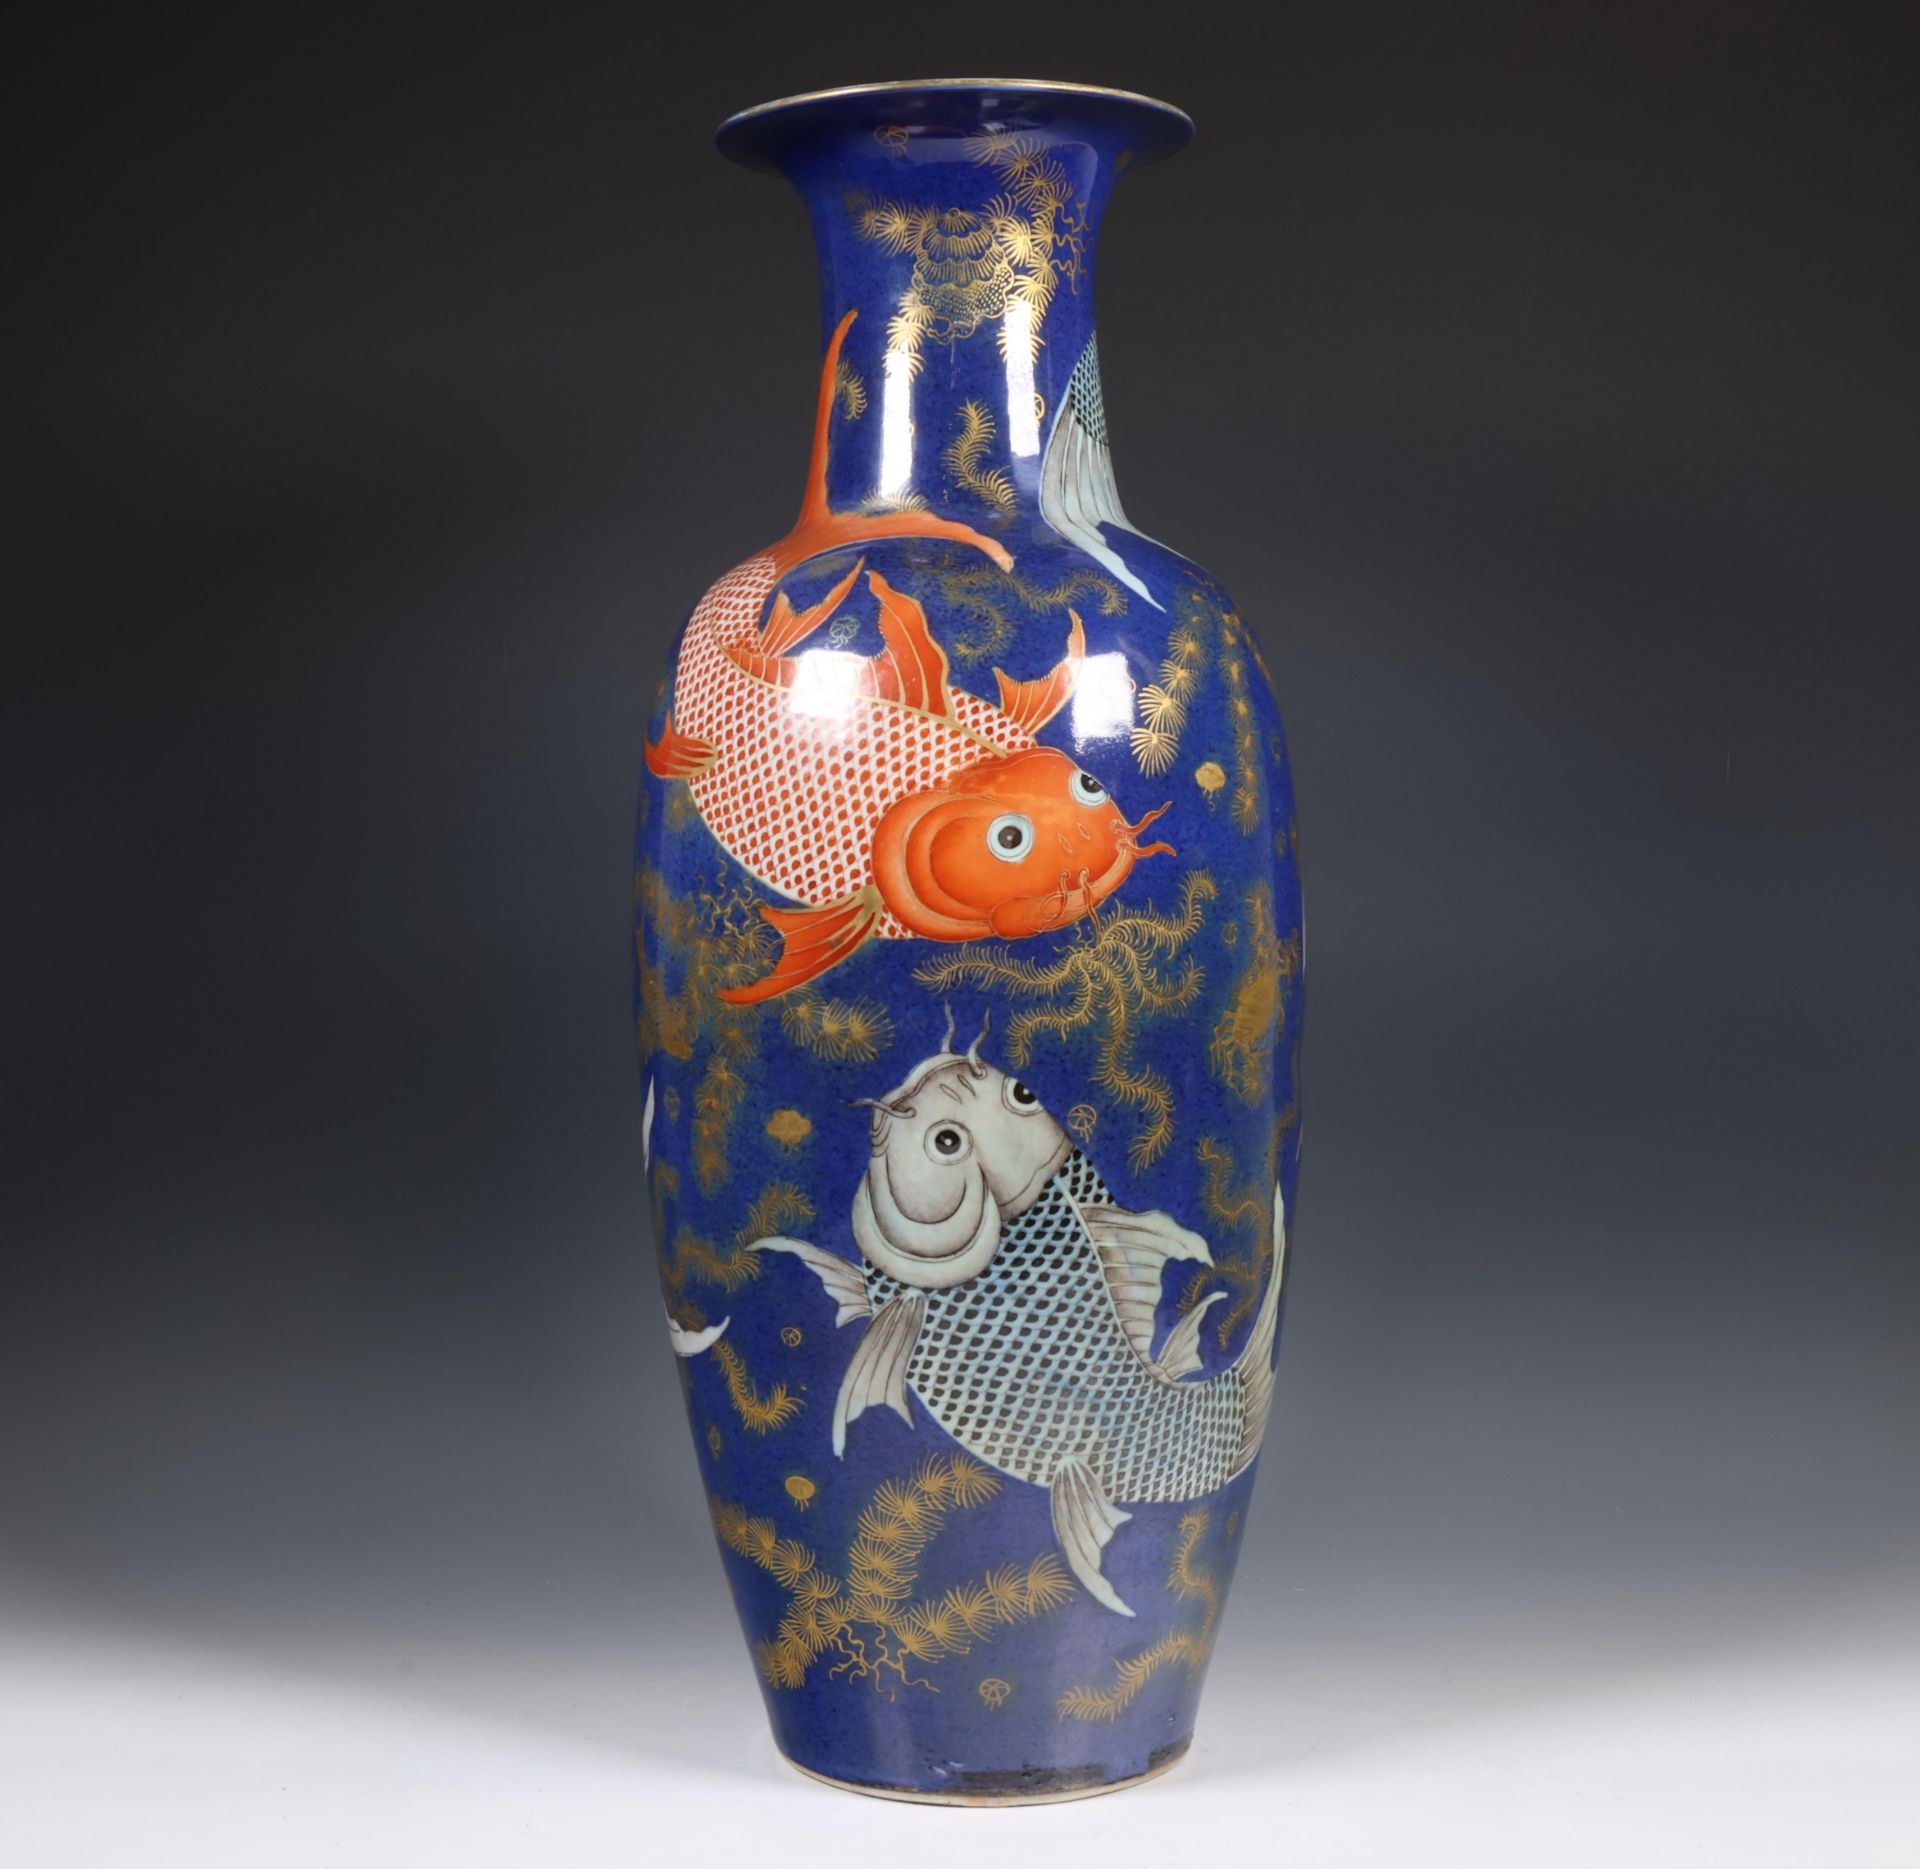 China, gilt-decorated powder-blue porcelain 'carp' vase, 19th century,